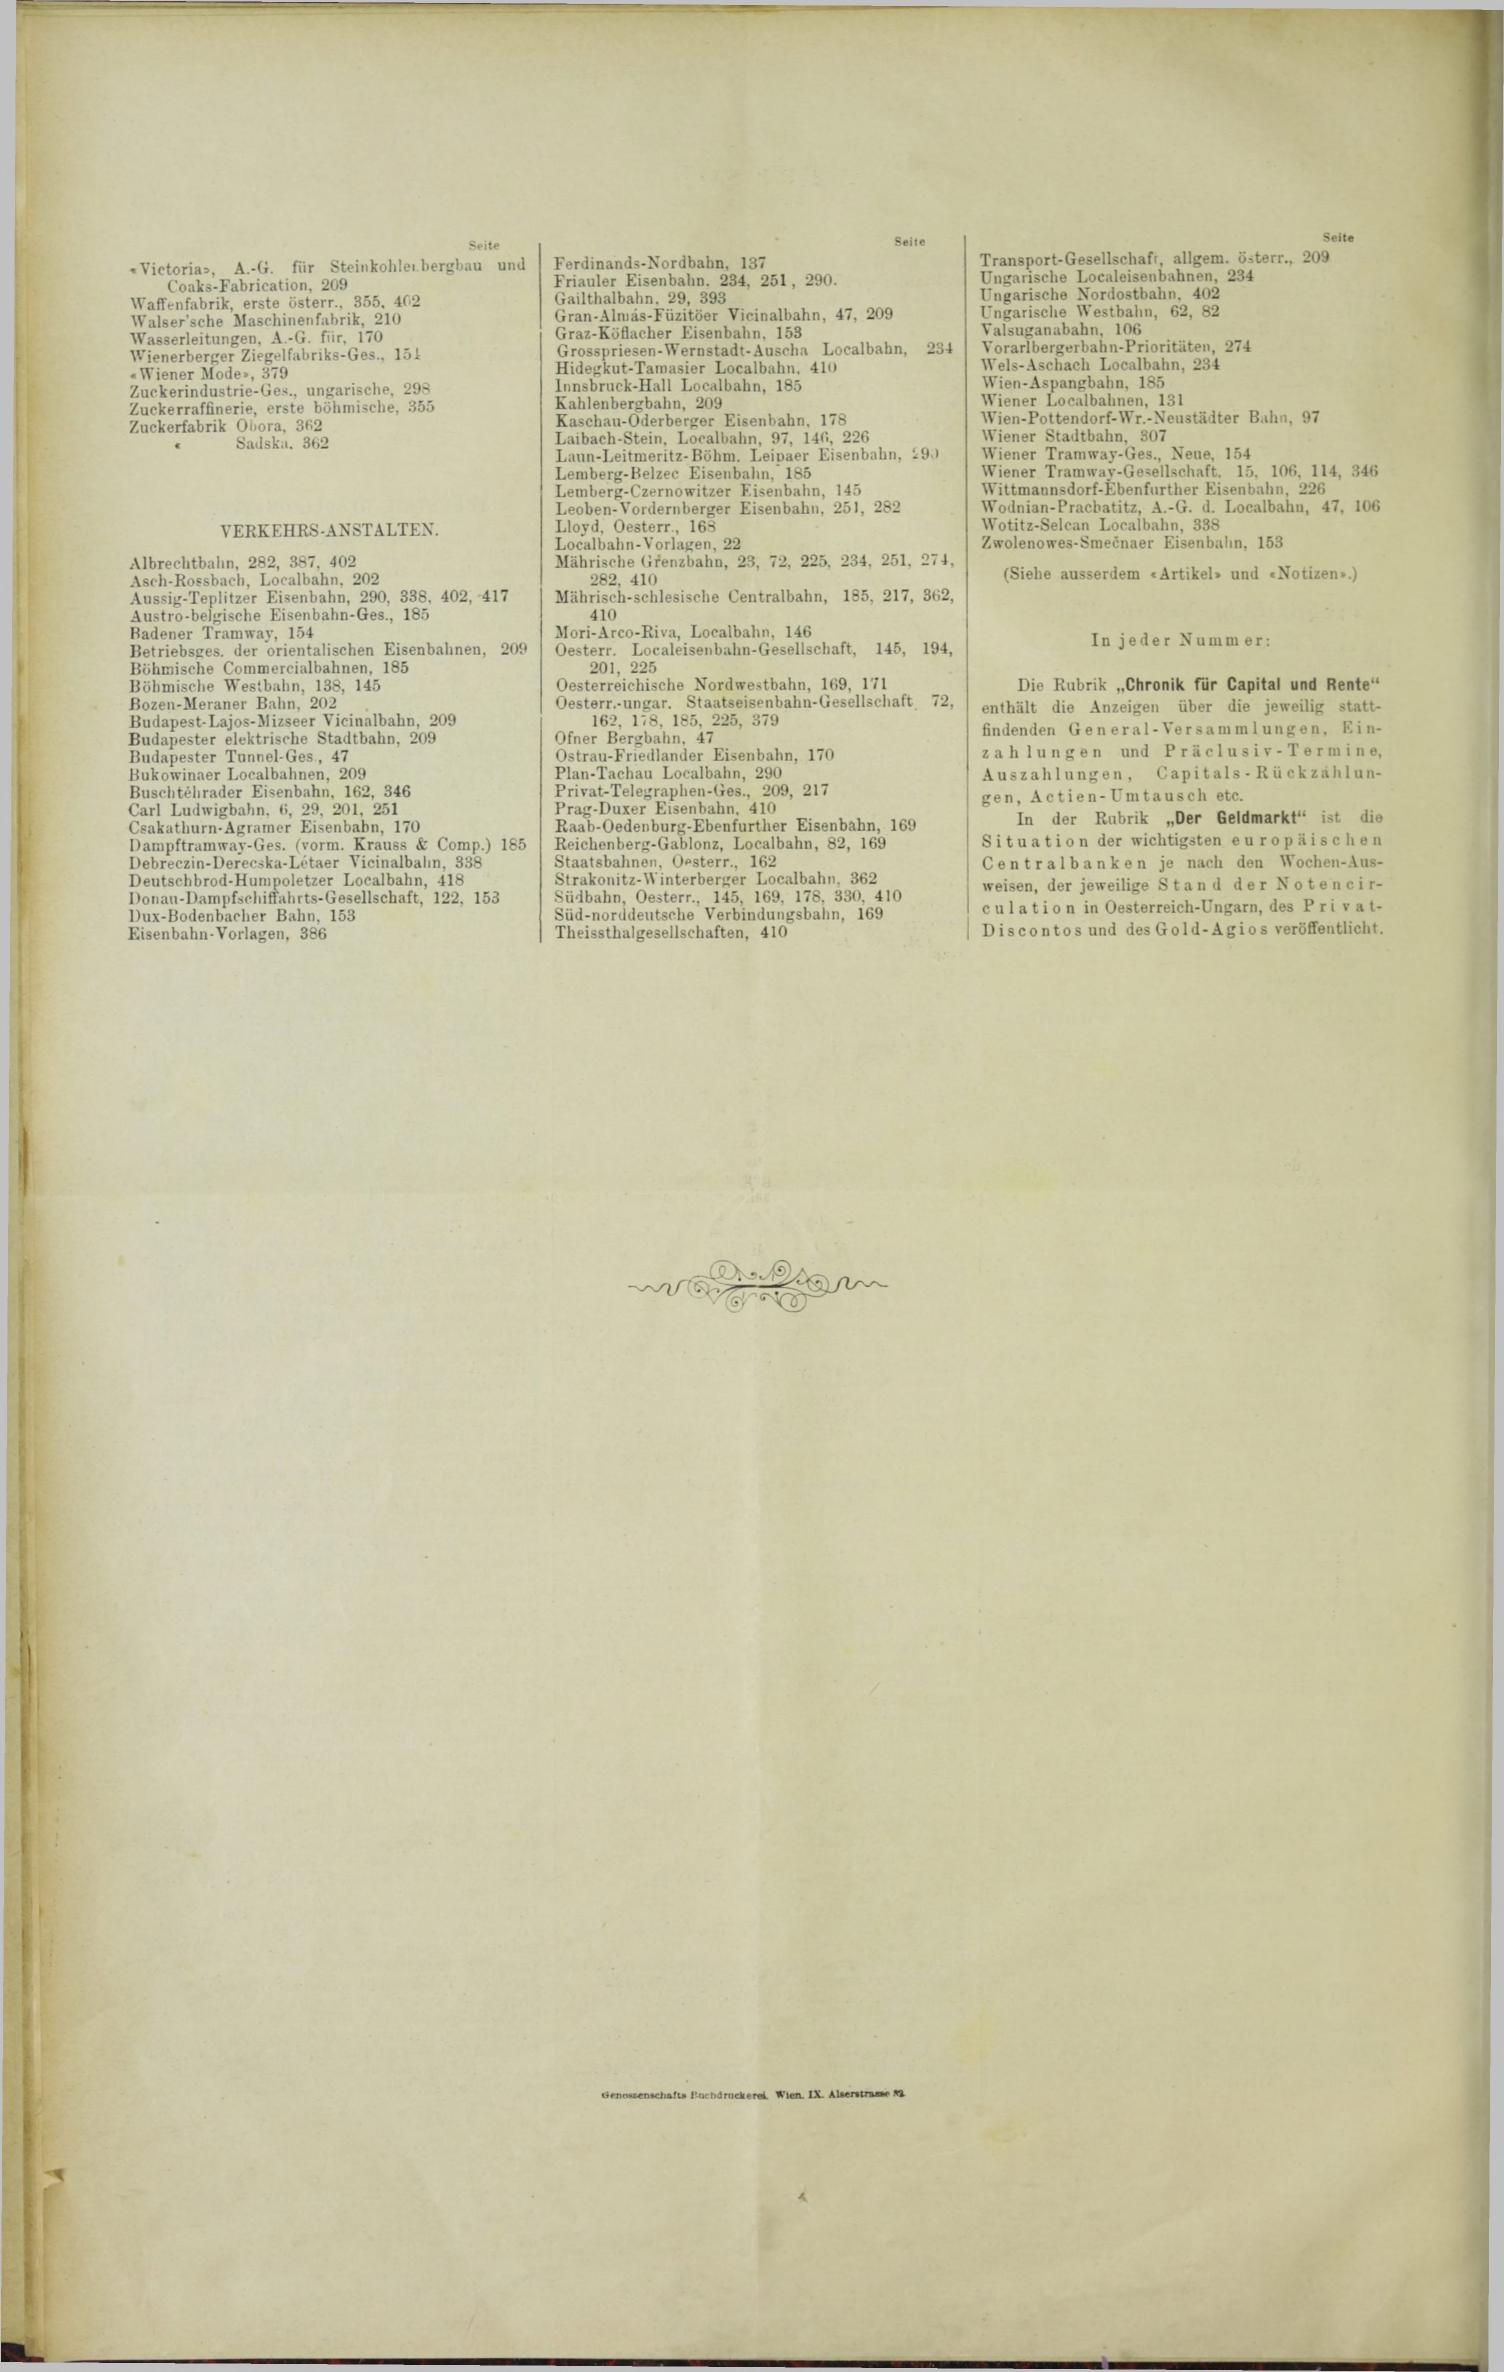 Der Tresor 04.05.1893 - Seite 12